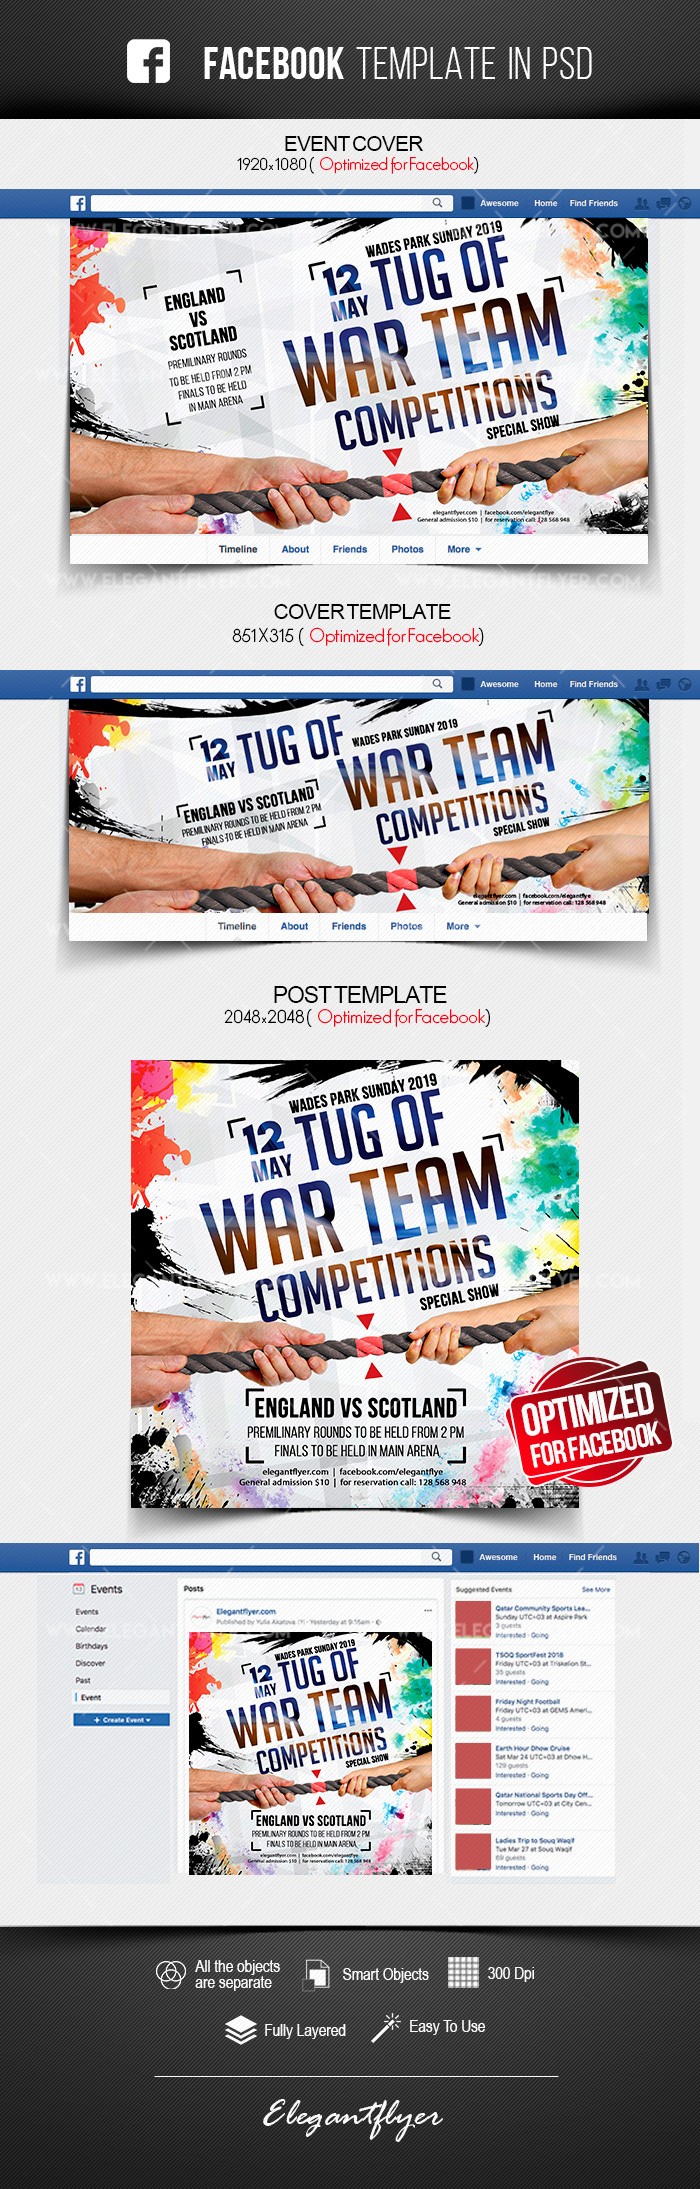 Competiciones de equipos de Tug of War en Facebook by ElegantFlyer